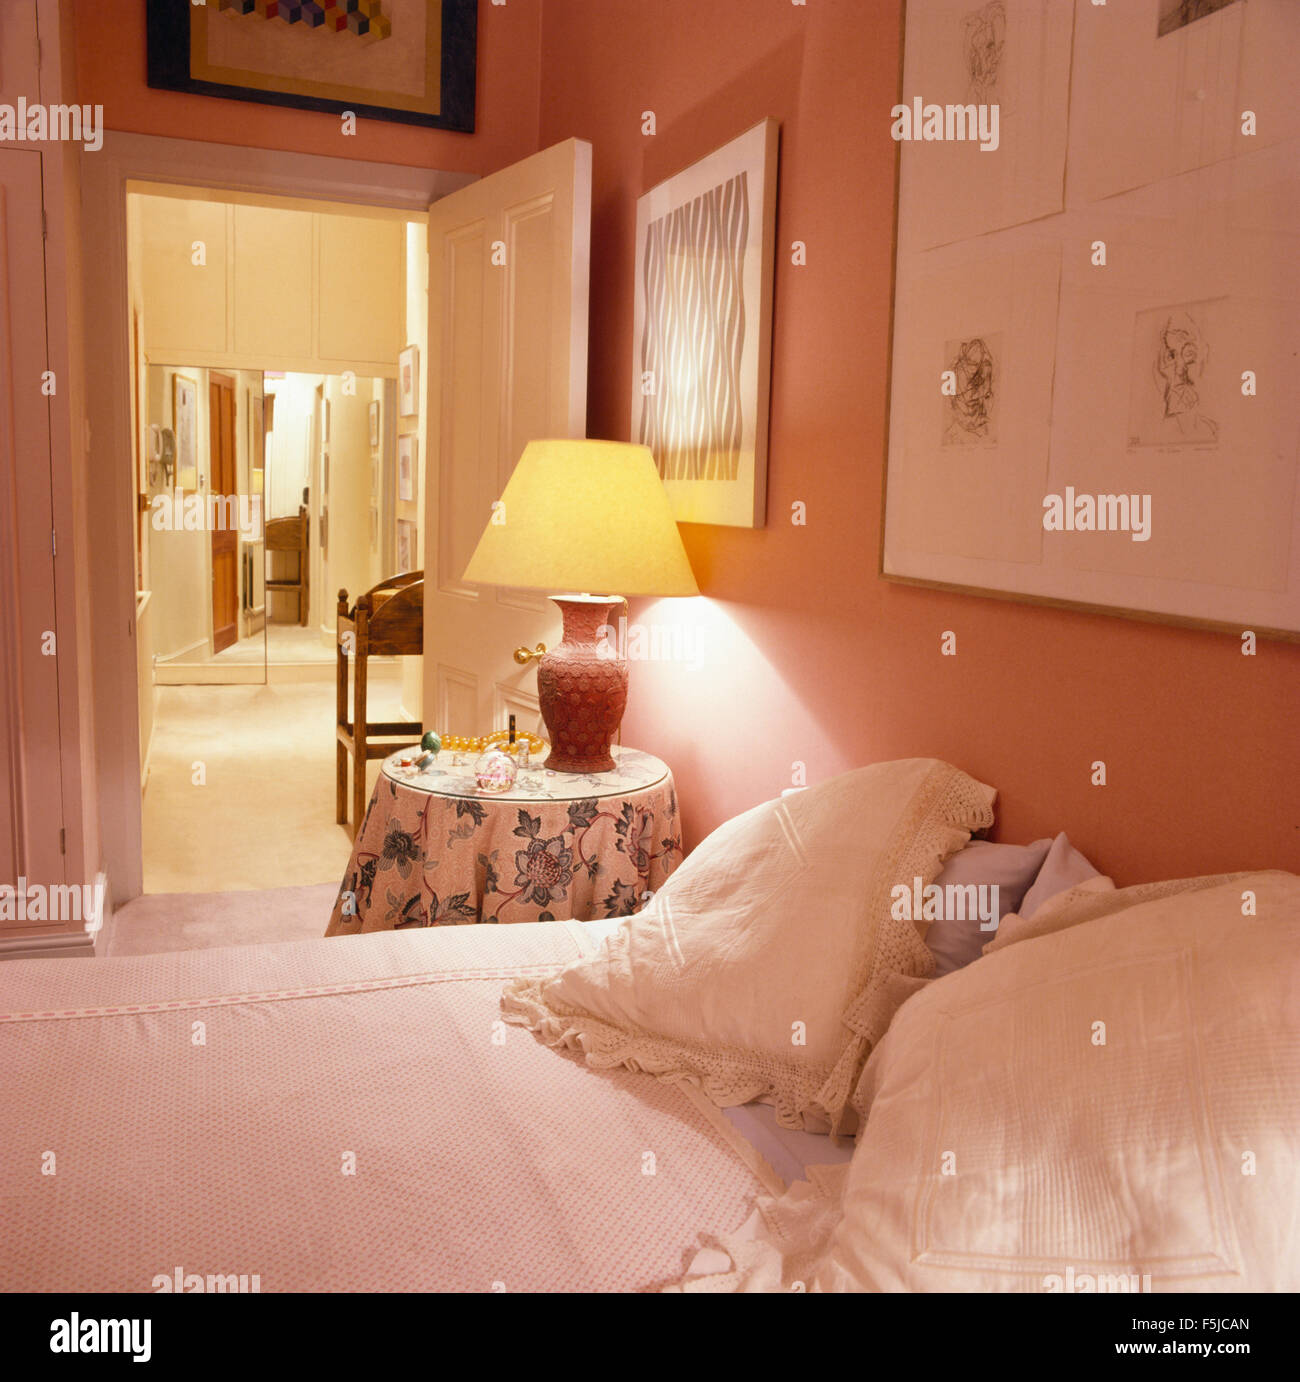 Lampada accesa sul comodino in una rosa la camera da letto degli anni ottanta Foto Stock